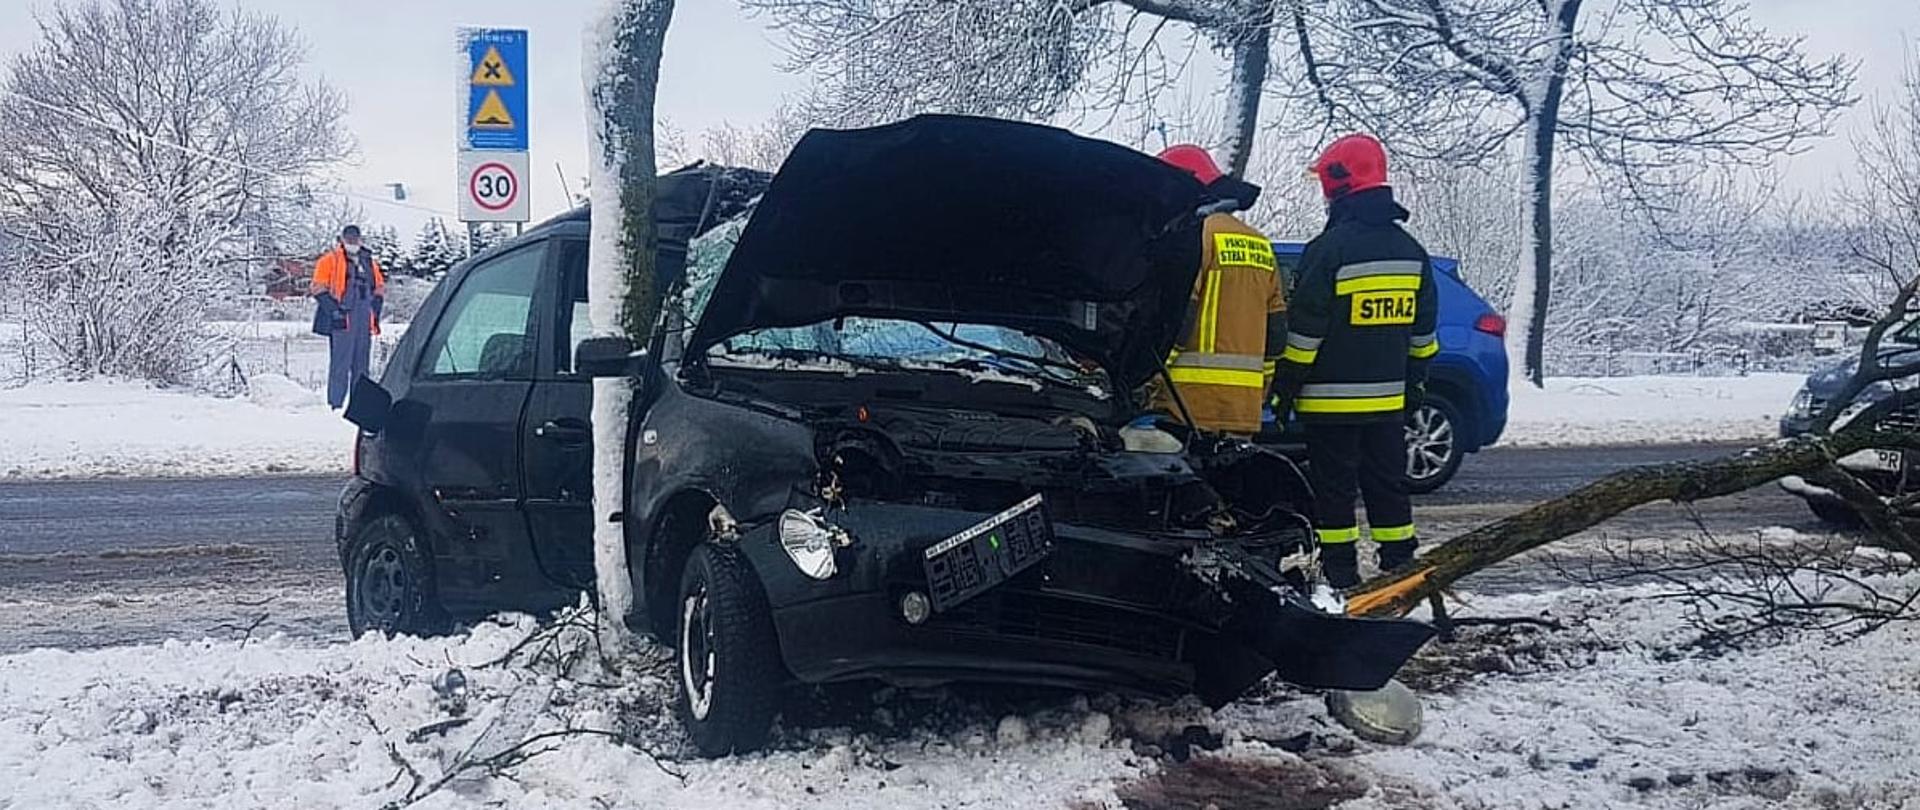 Zdjęcie przedstawia samochód osobowy, który uderzył w drzewo, uszkodzony bok auta, kolor auta czarny.